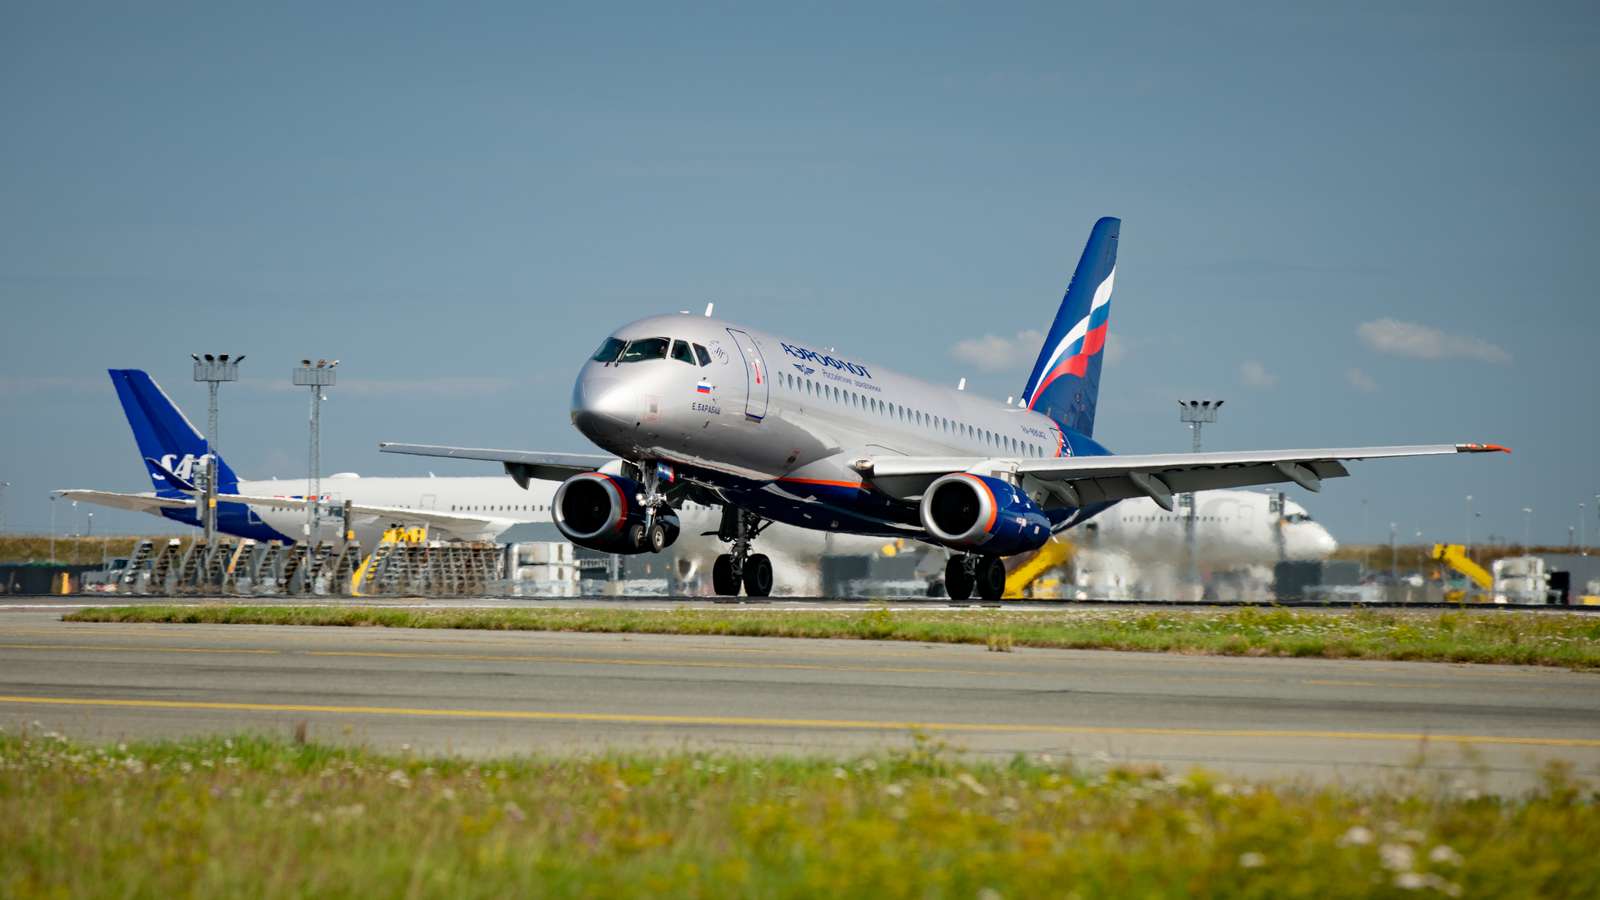 Aeroflot Sukhoi Superjet 100 landing